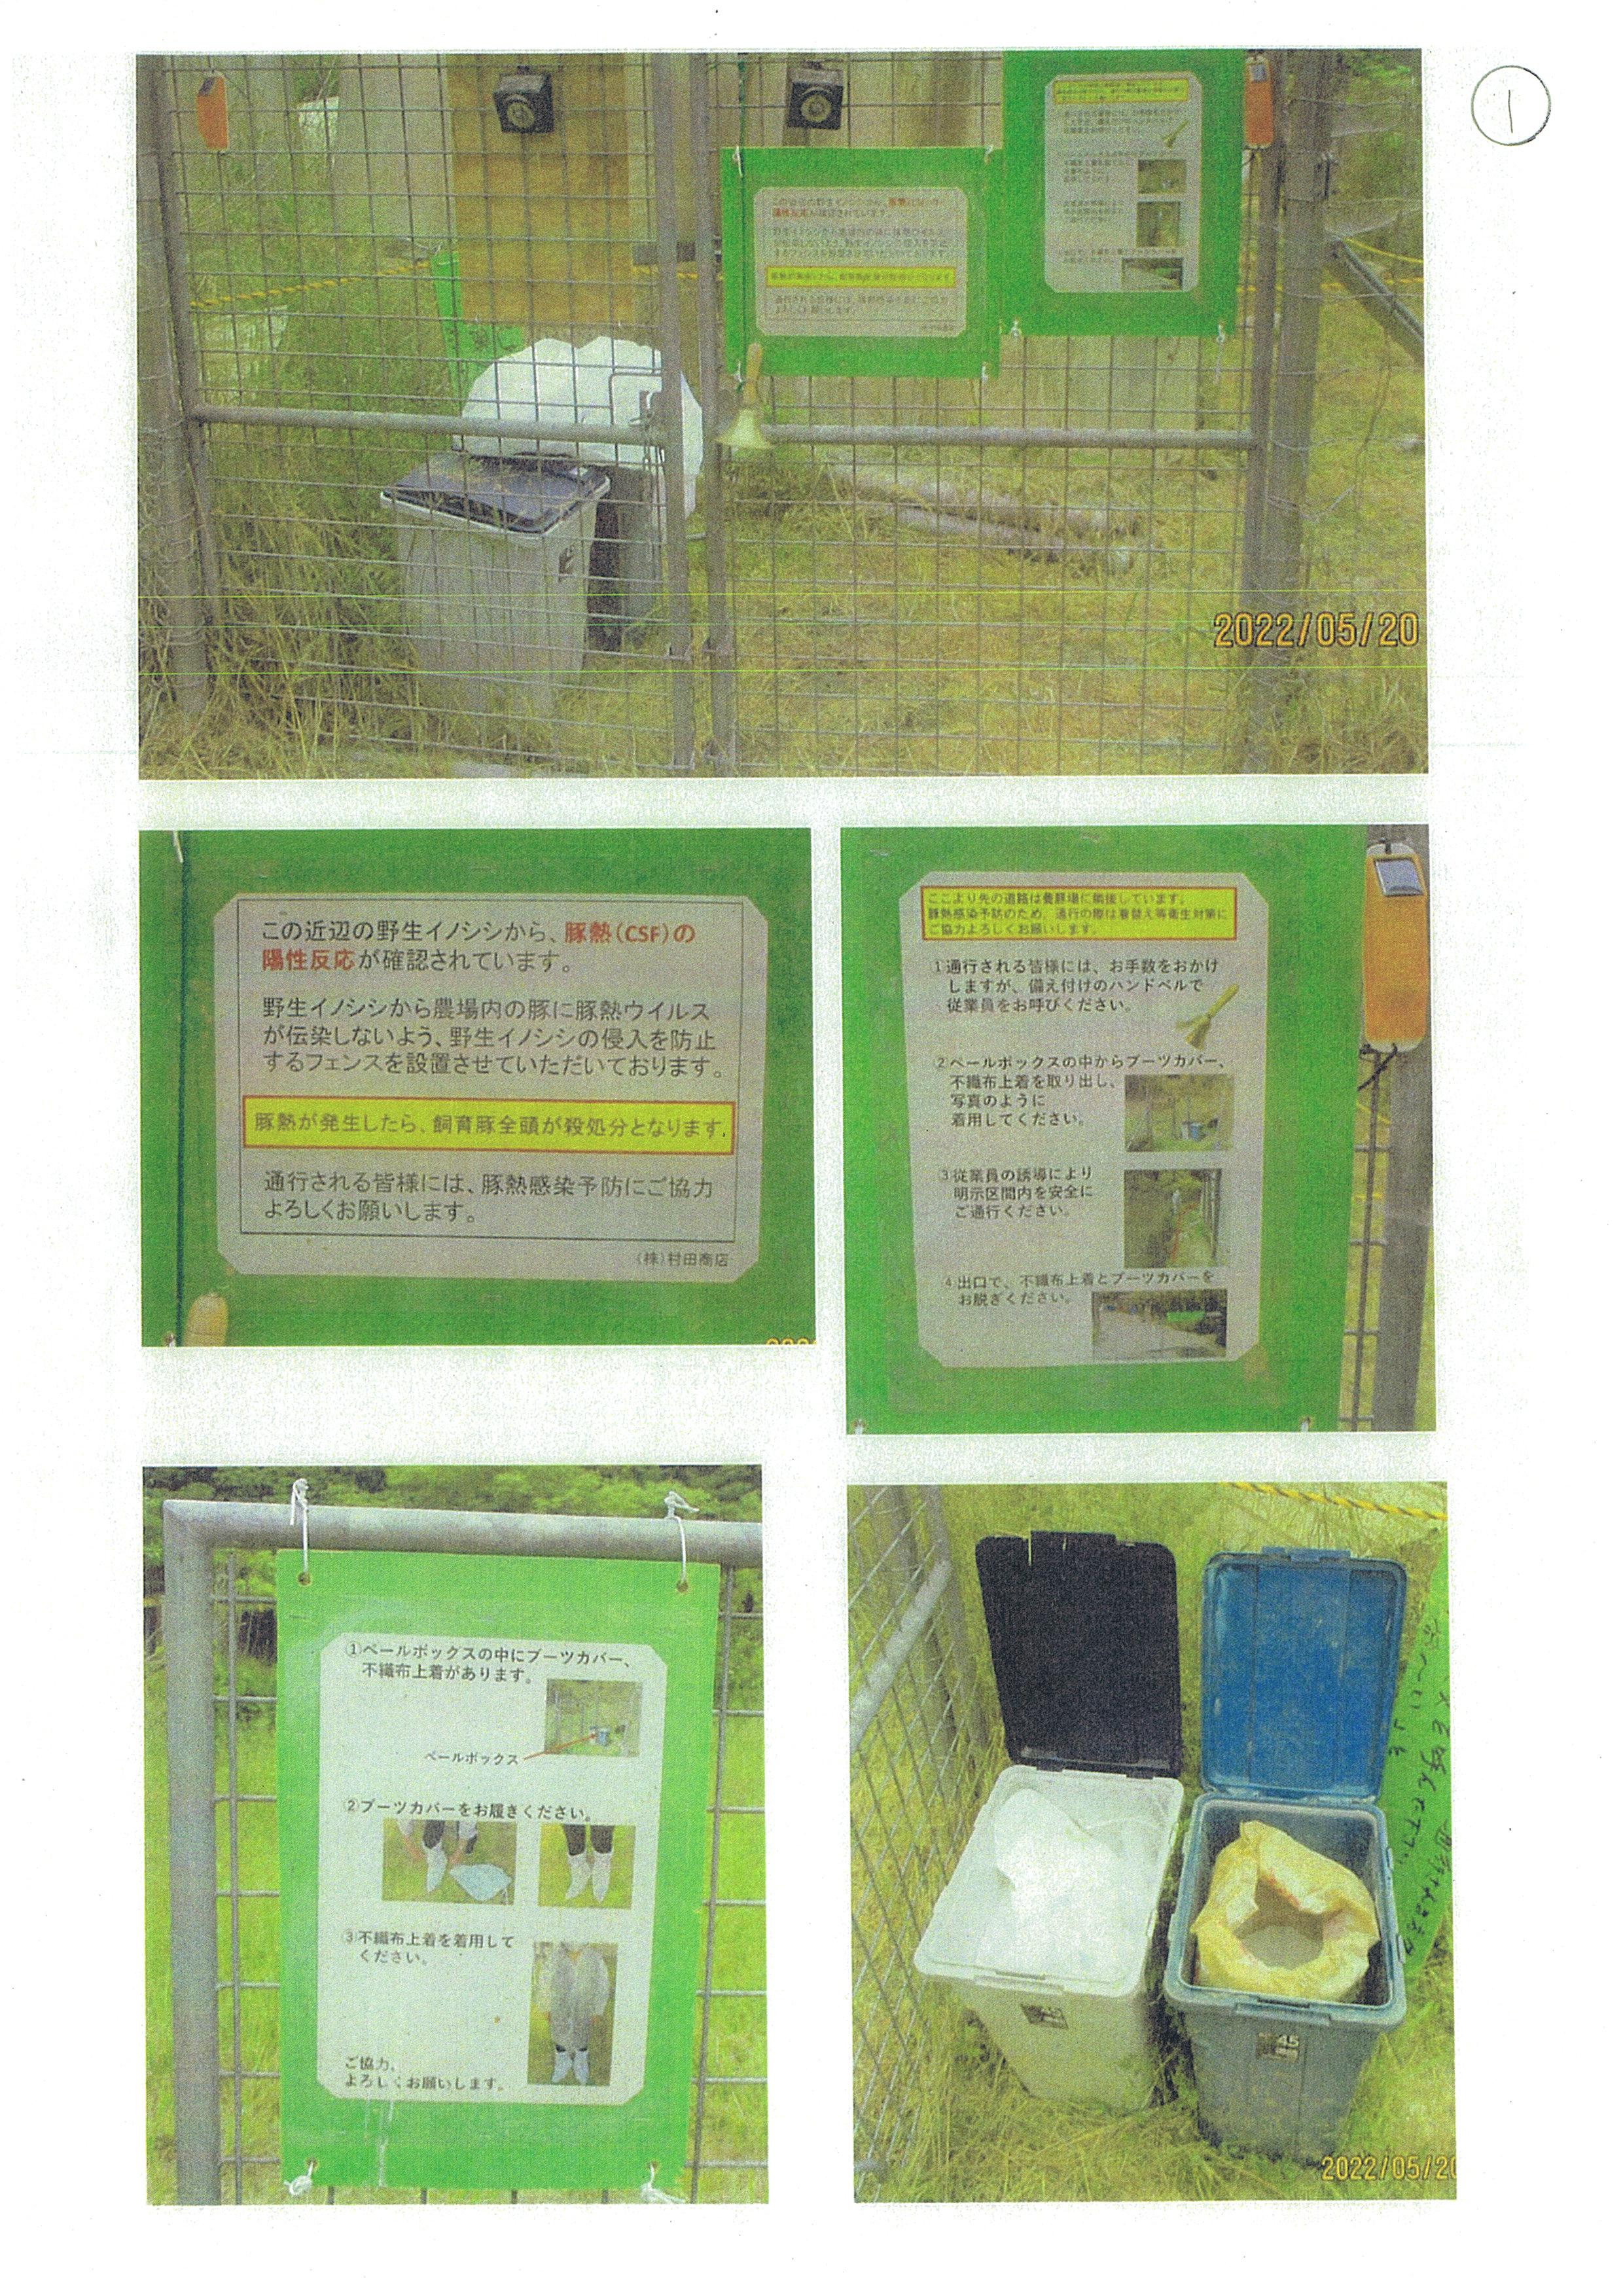 令和4年5月20日-村田商店防護柵への掲示物確認-03